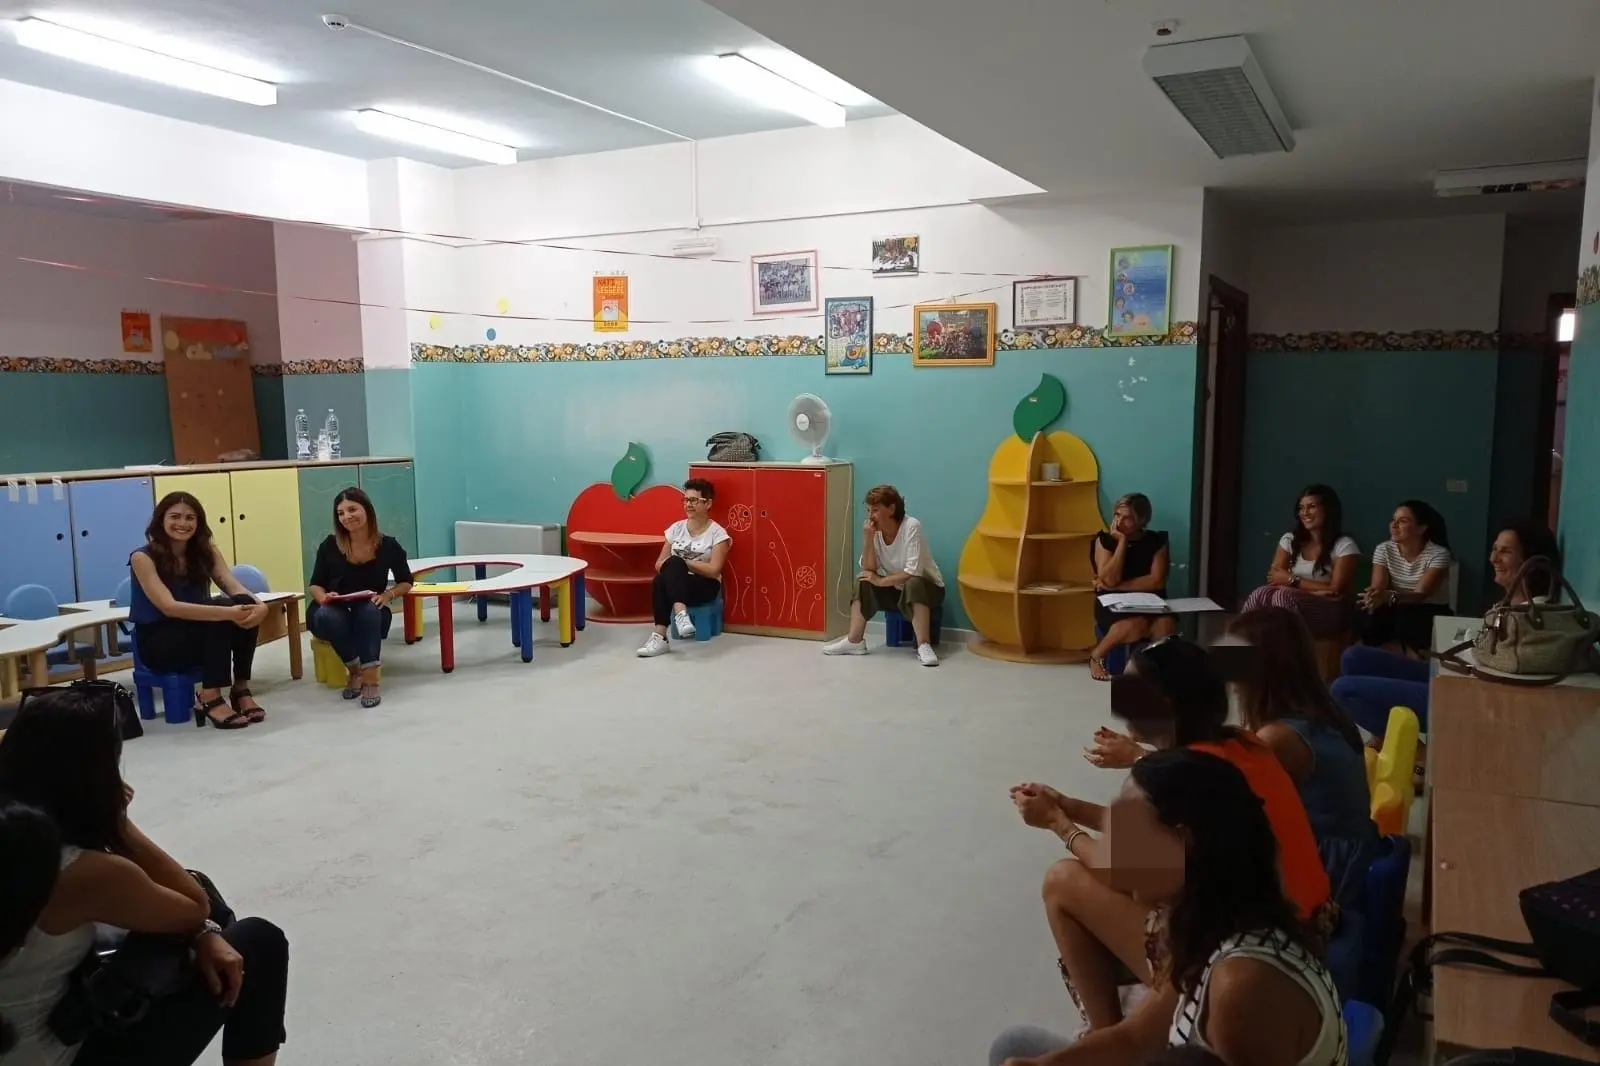 La riunione tra genitori e amministratori comunali (foto concessa)